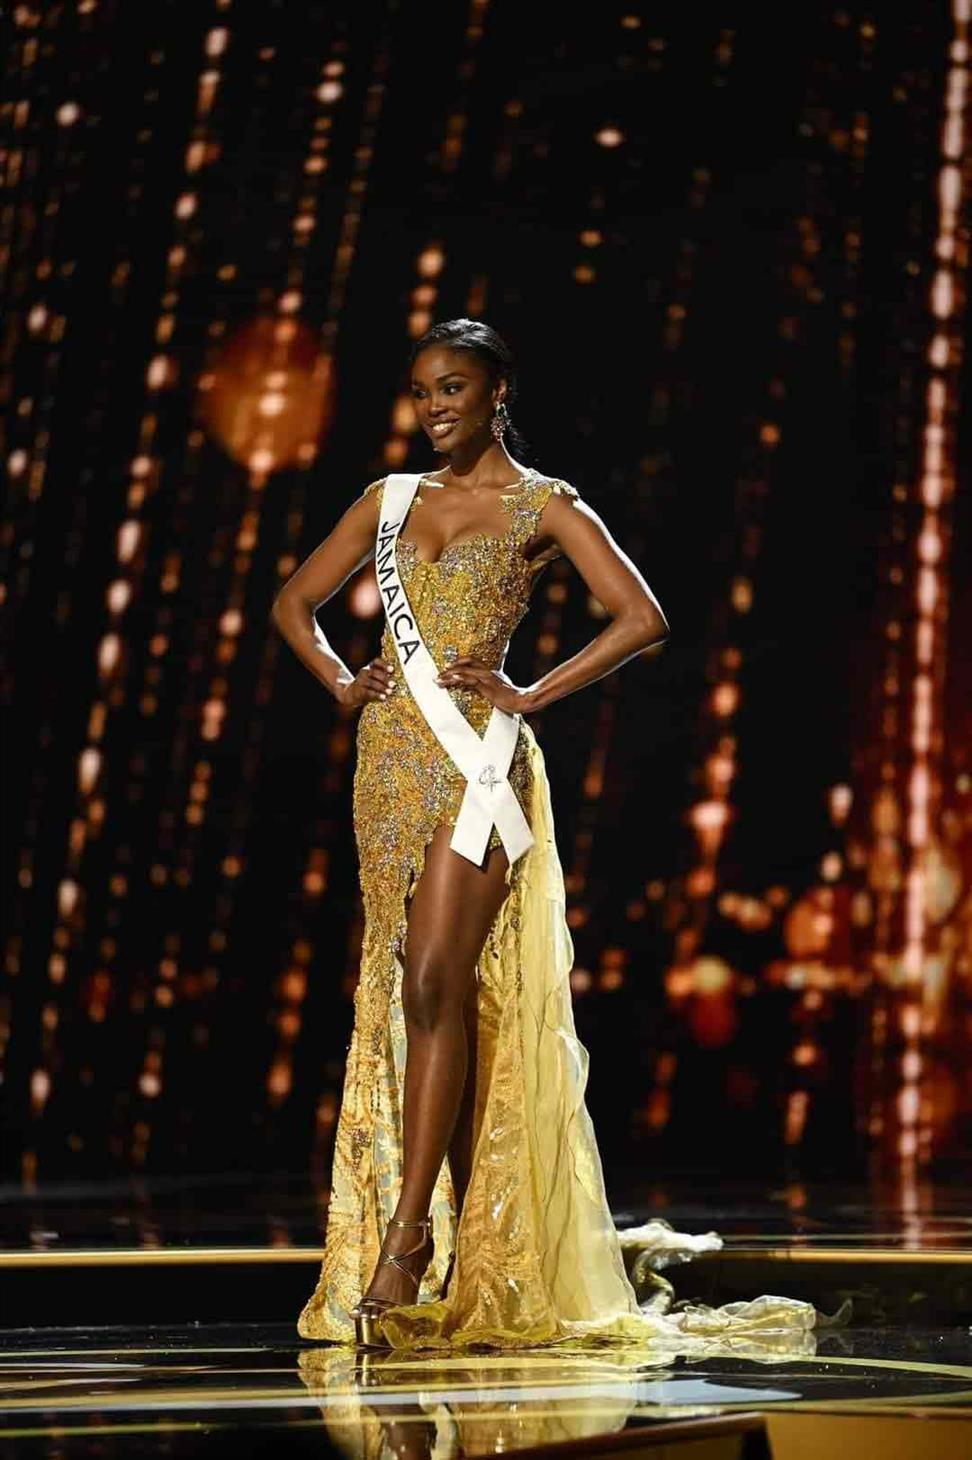 Toshami Calvin representing Jamaica